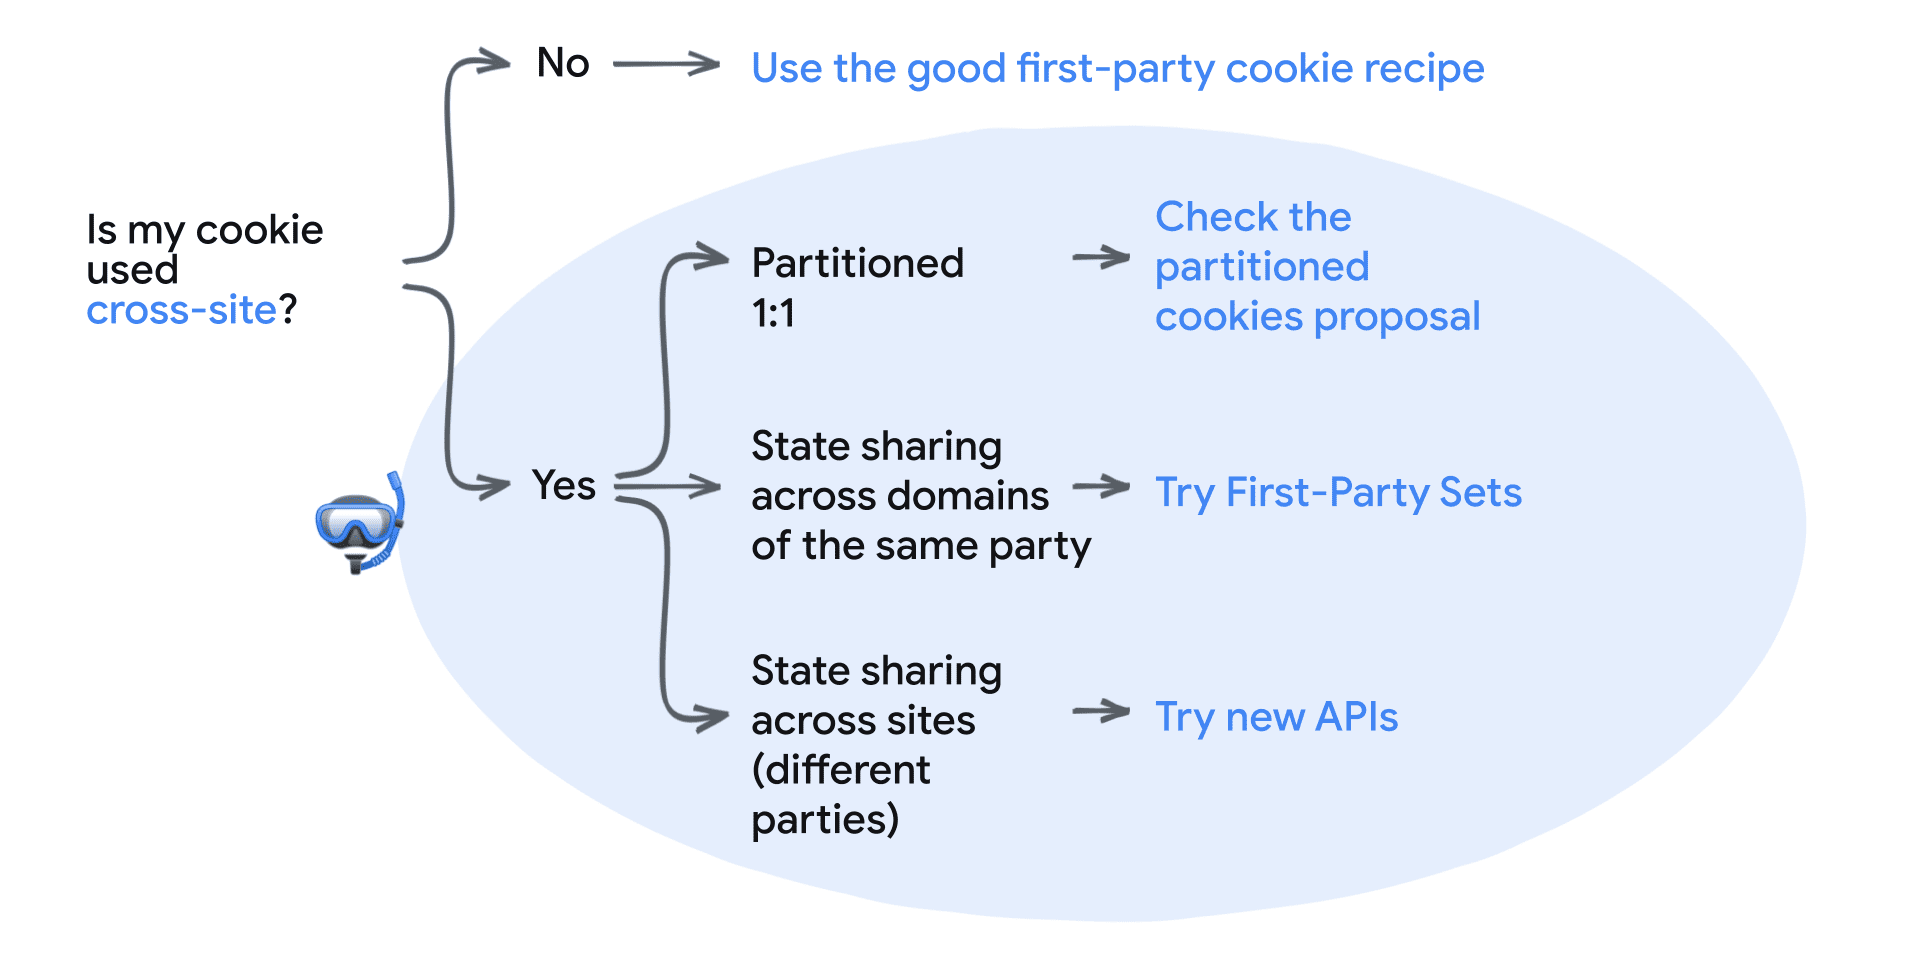 Cookie はクロスサイトで使用されますか？いいえ: ファーストパーティ クッキーの適切なレシピを使用する。
はい: 1 対 1 のパーティション分割 - CHIPS 提案をチェックし、同じ当事者のドメイン間での状態共有を確認 - ファーストパーティ セットの使用、サイト間での状態共有（異なる当事者） - 新しい API を試す